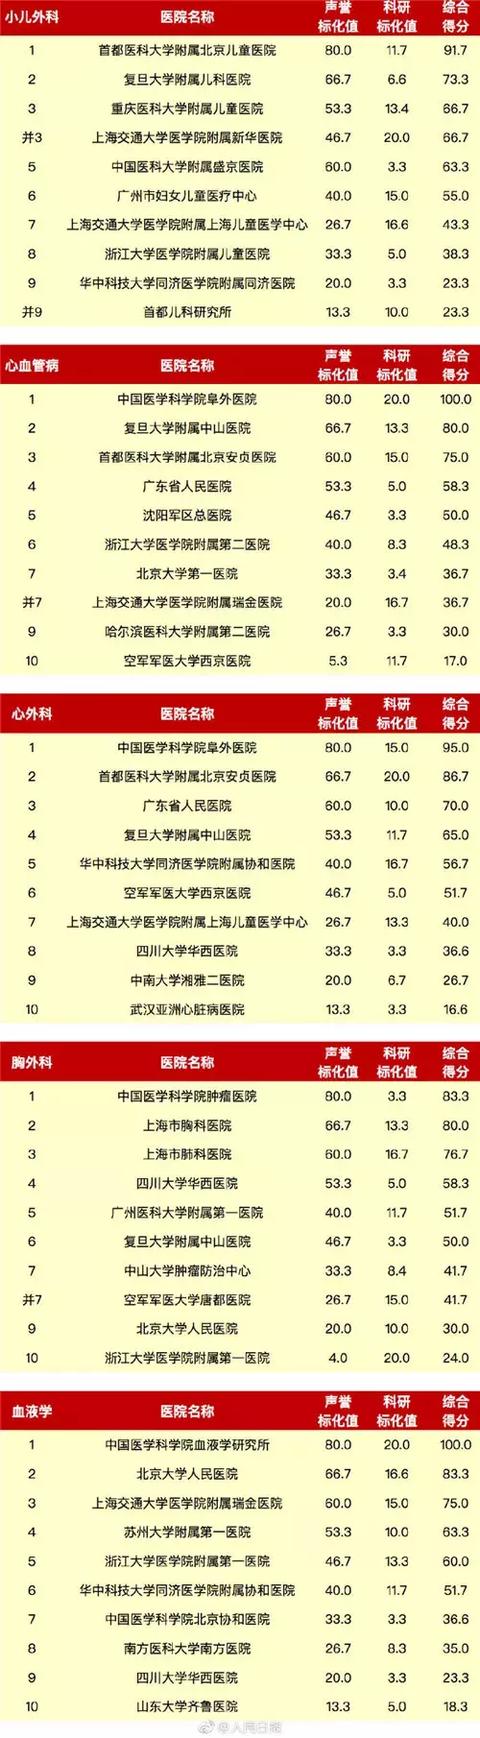 最新中国医院综合排行榜出炉 云南仅有这家医院上榜